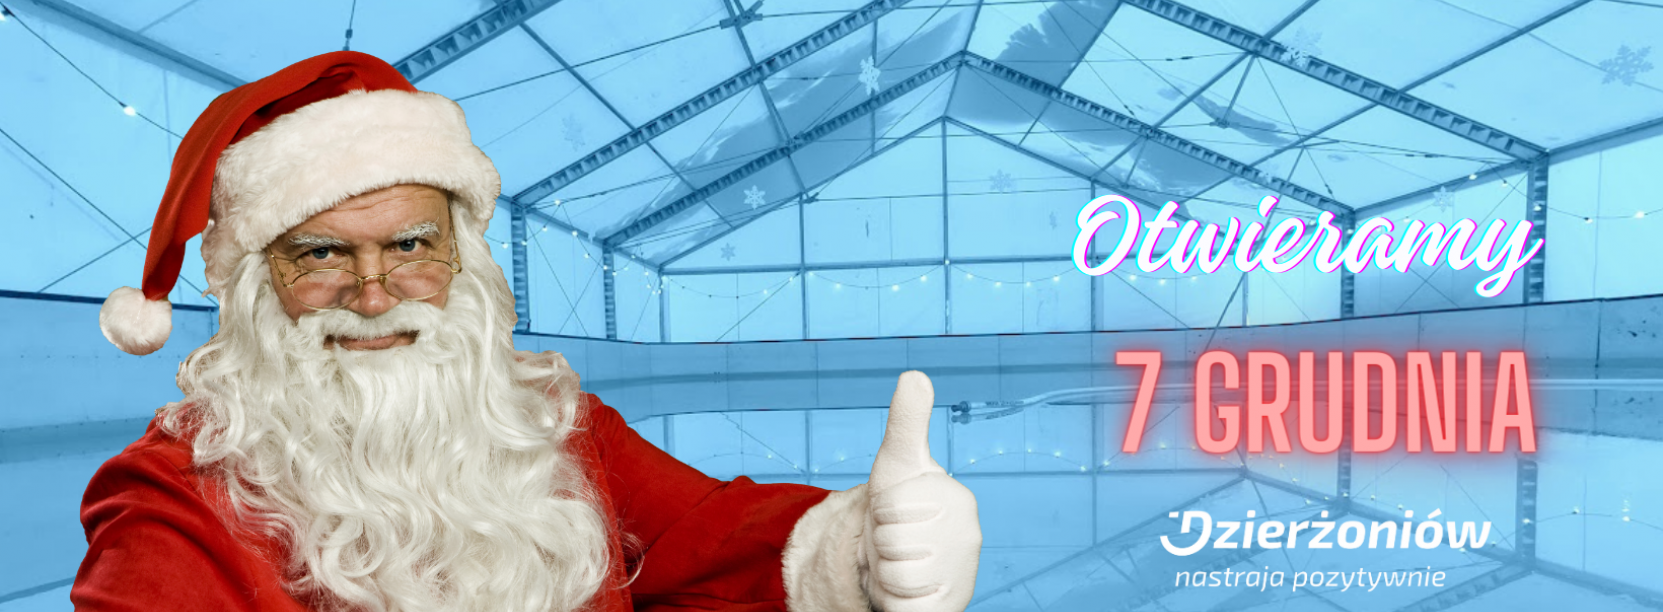 Na pierwszym planie ś. Mikołaj w tle lodowisko na pis otwierami 7 grudnia i logo Dzierżoniowa